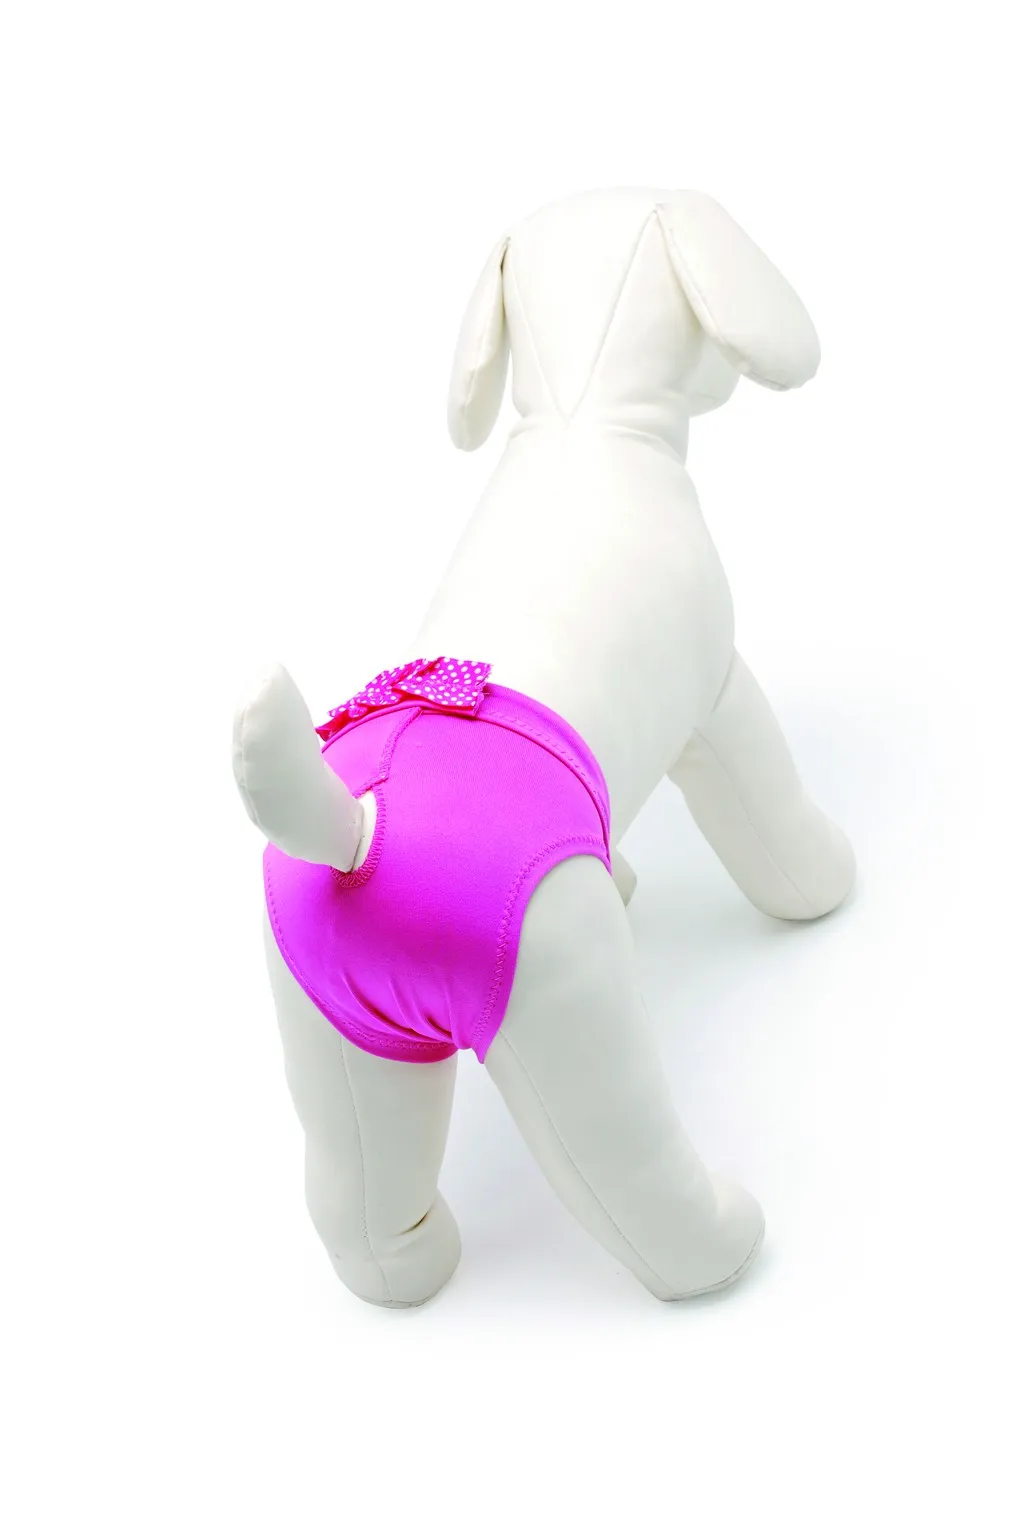 Camon Microfiber Dog Pants with Bow - бански/ хигиенни гащи за разгонени женски кучета, микрофибър розови 30 см. 2